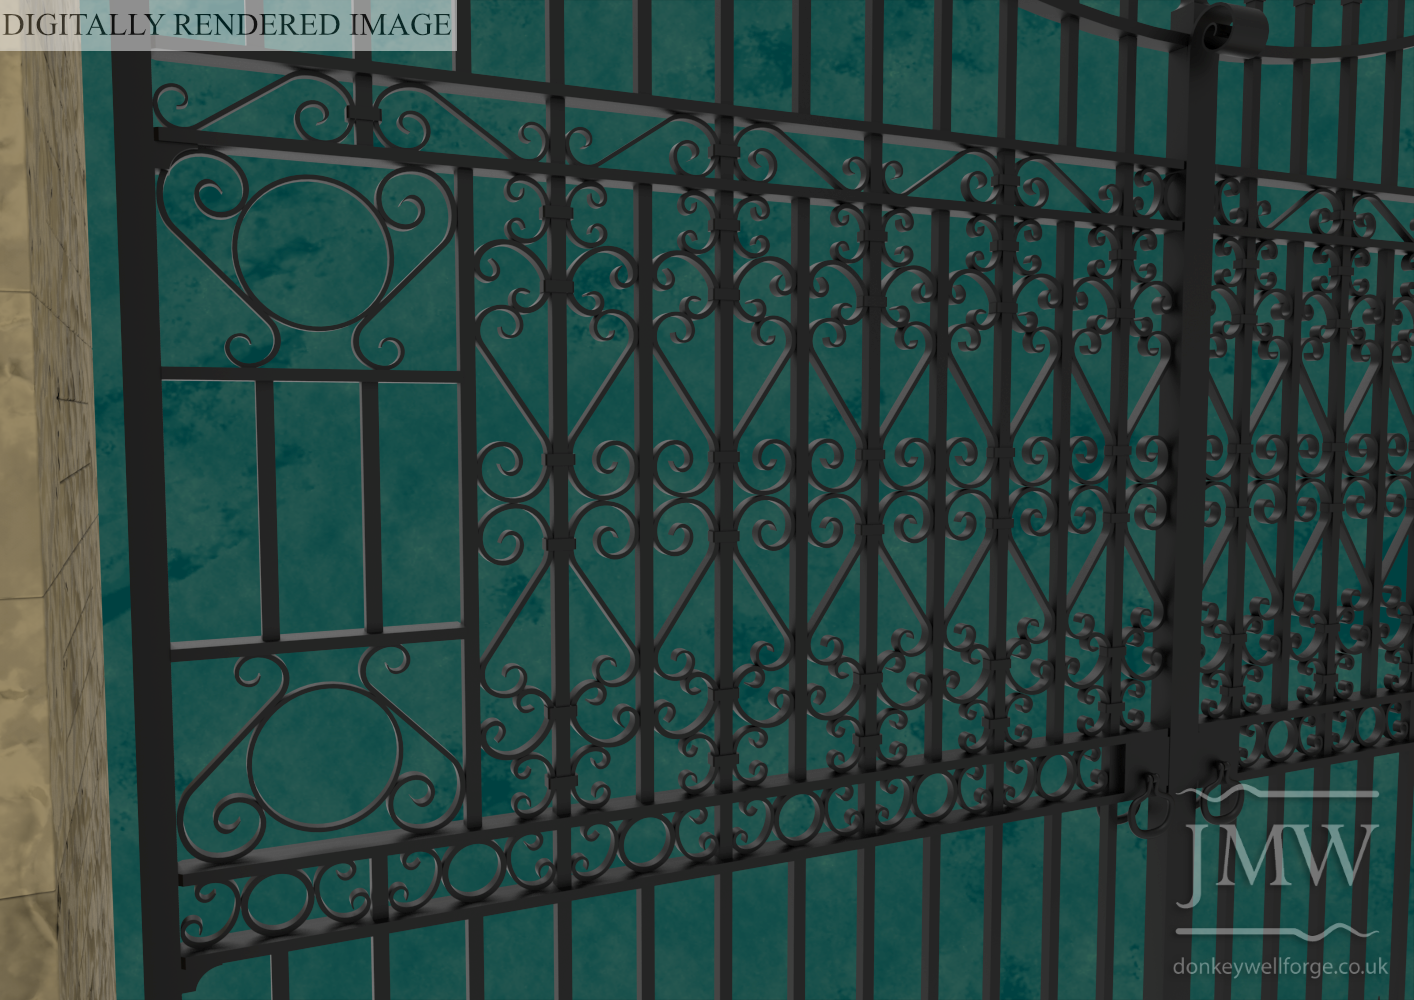 digital-image-estate-gates-ornate-scrollwork-detail